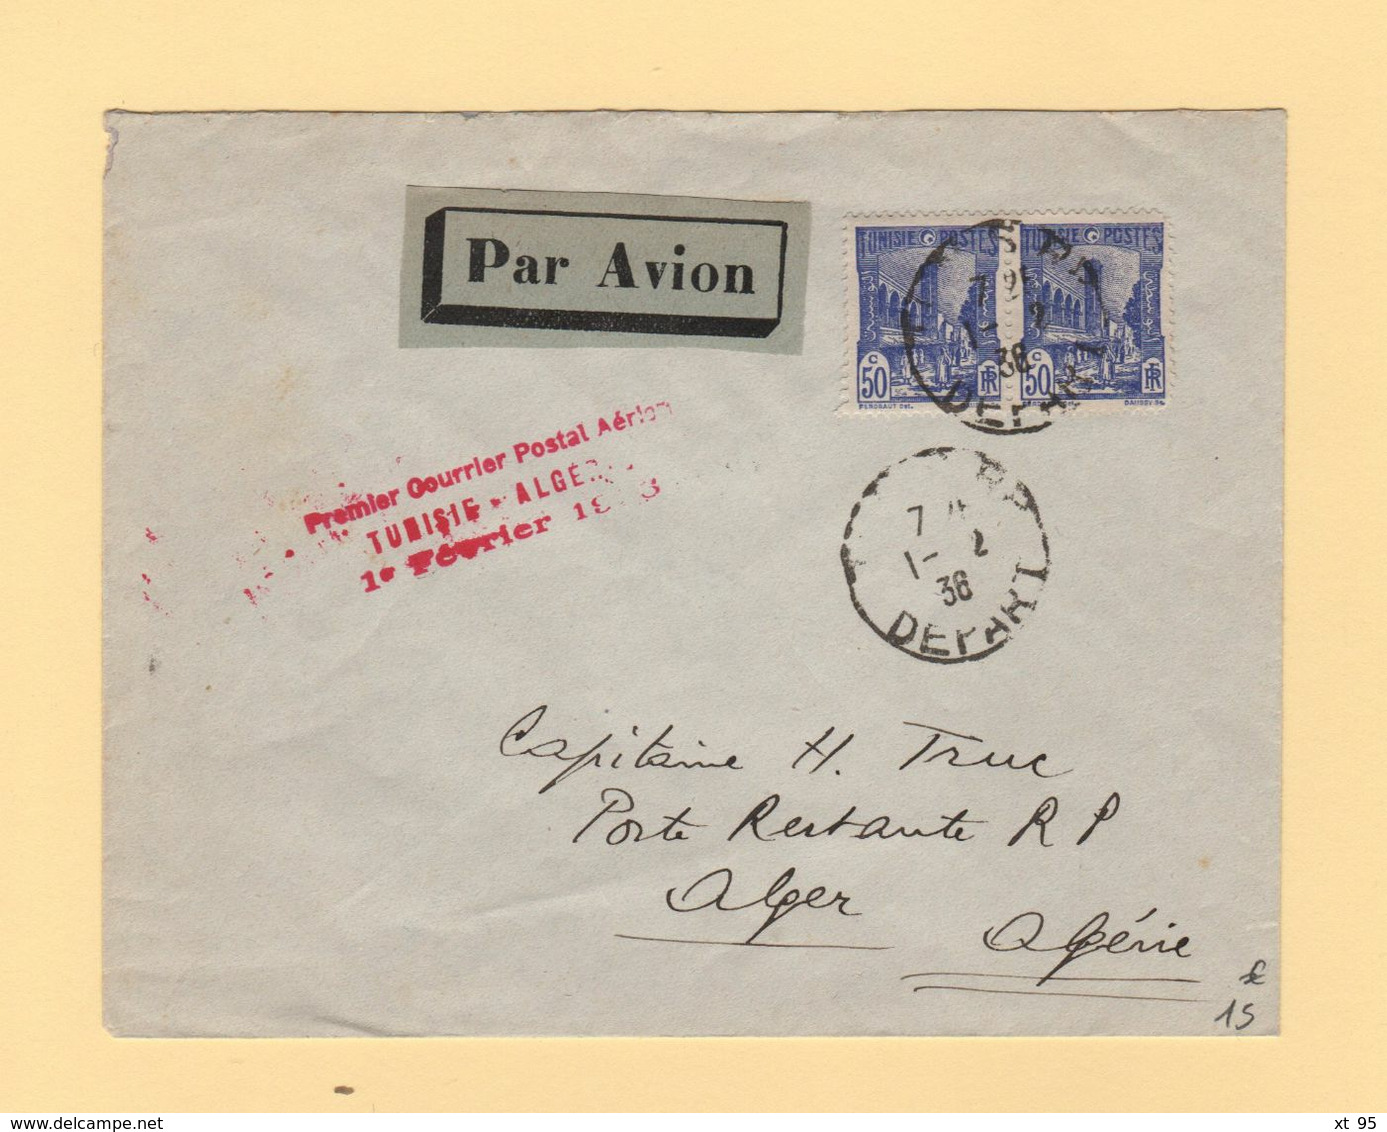 Tunisie - Premier Courrier Postal Aerien Tunisie Algerie - 1er Fevrier 1936 - Luftpost